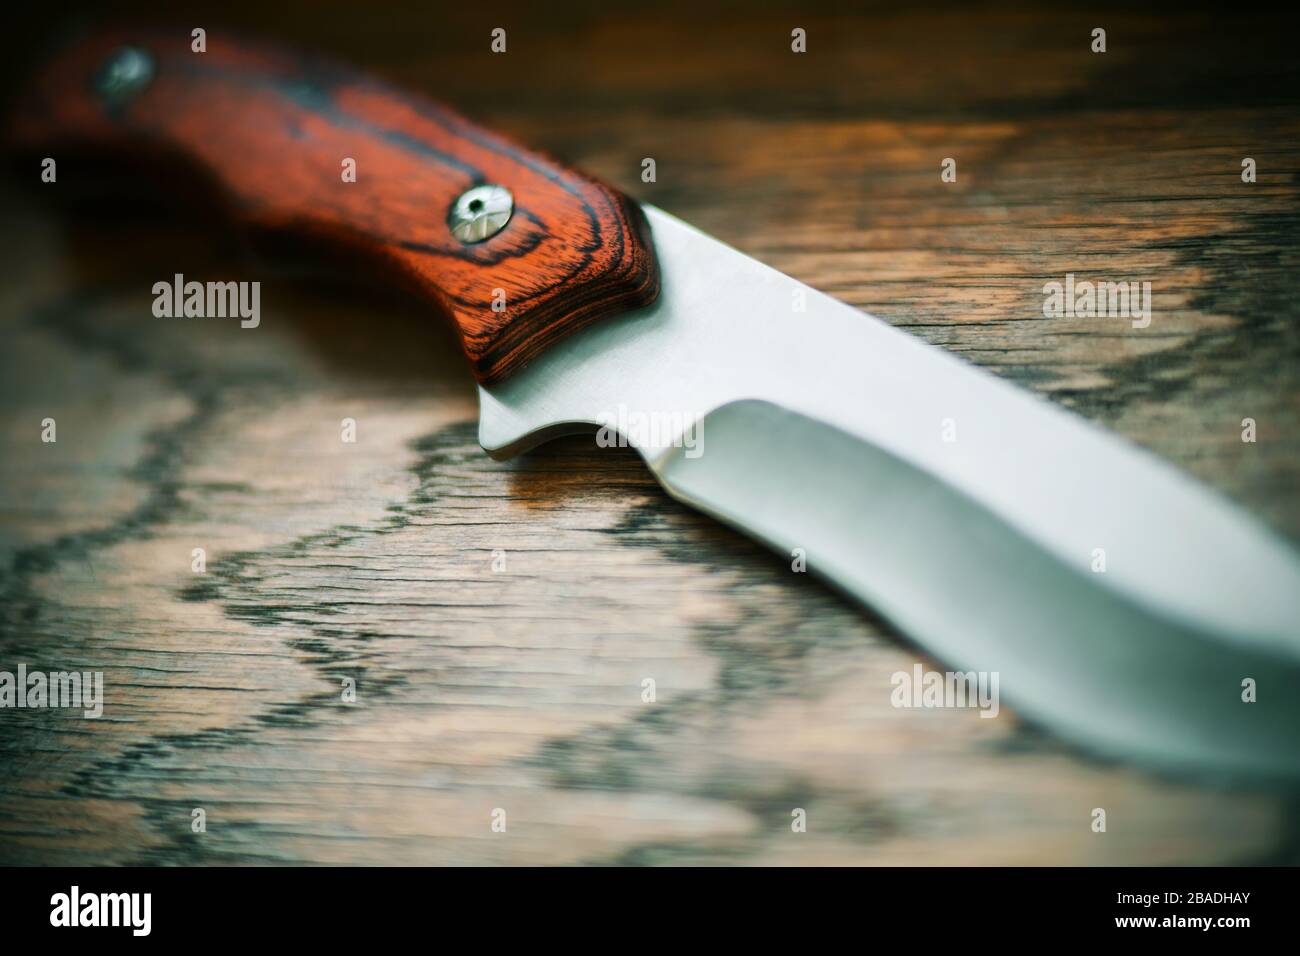 Un coltello affilato in acciaio con manico in legno si trova su un tavolo in legno, illuminato dalla luce. Foto Stock